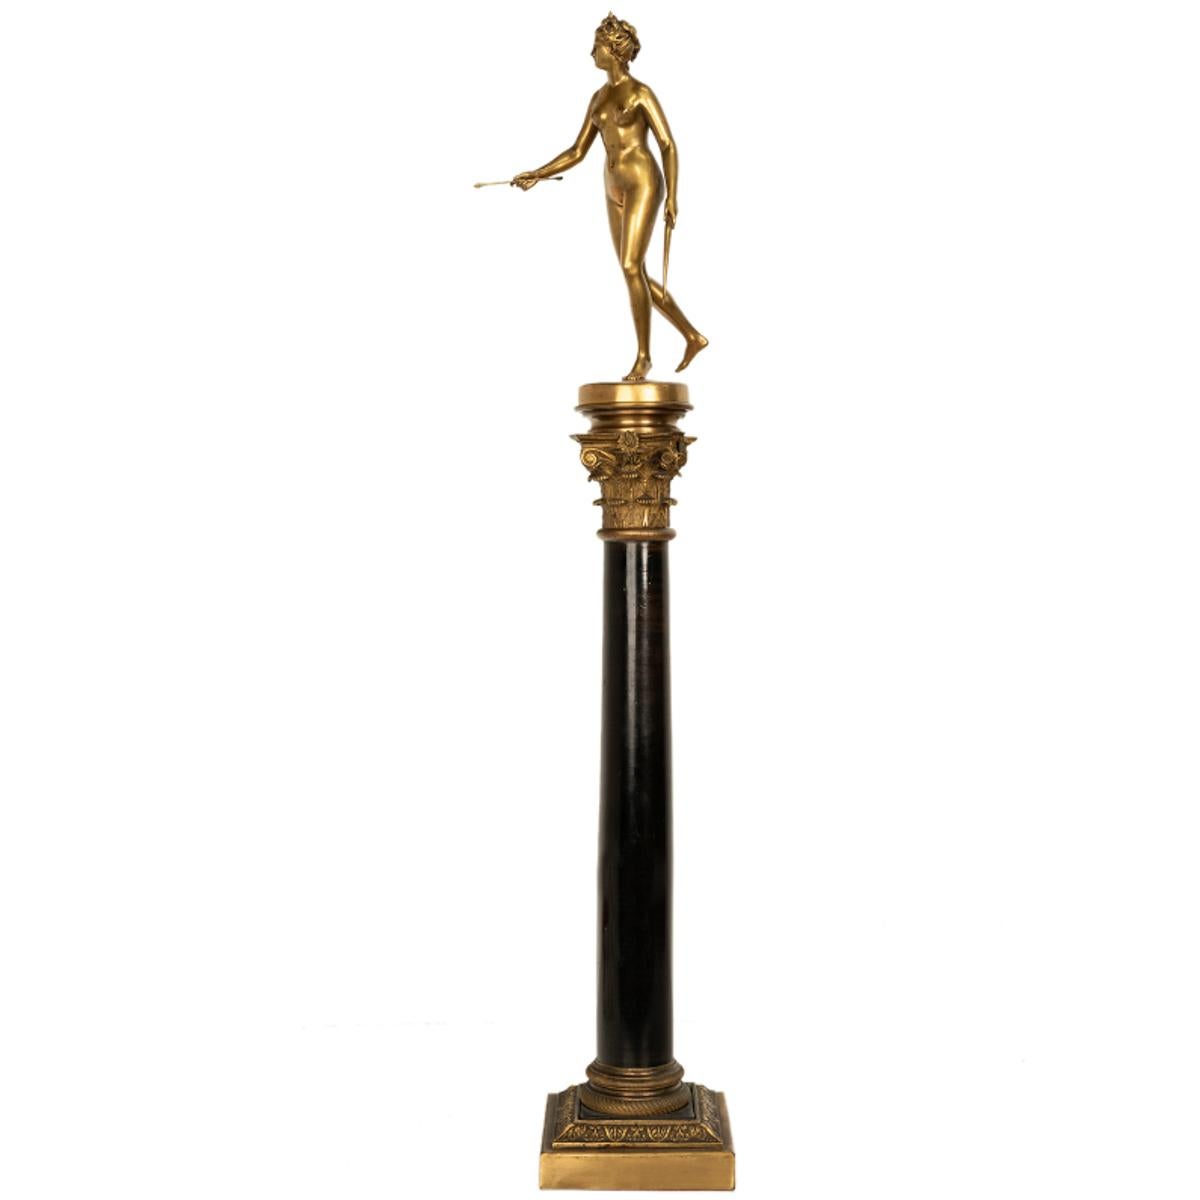 Figurative Sculpture Ferdinand Barbedienne - Ancienne statue française du Grand Tour en bronze doré sur colonne Diane la chasseuse 1838